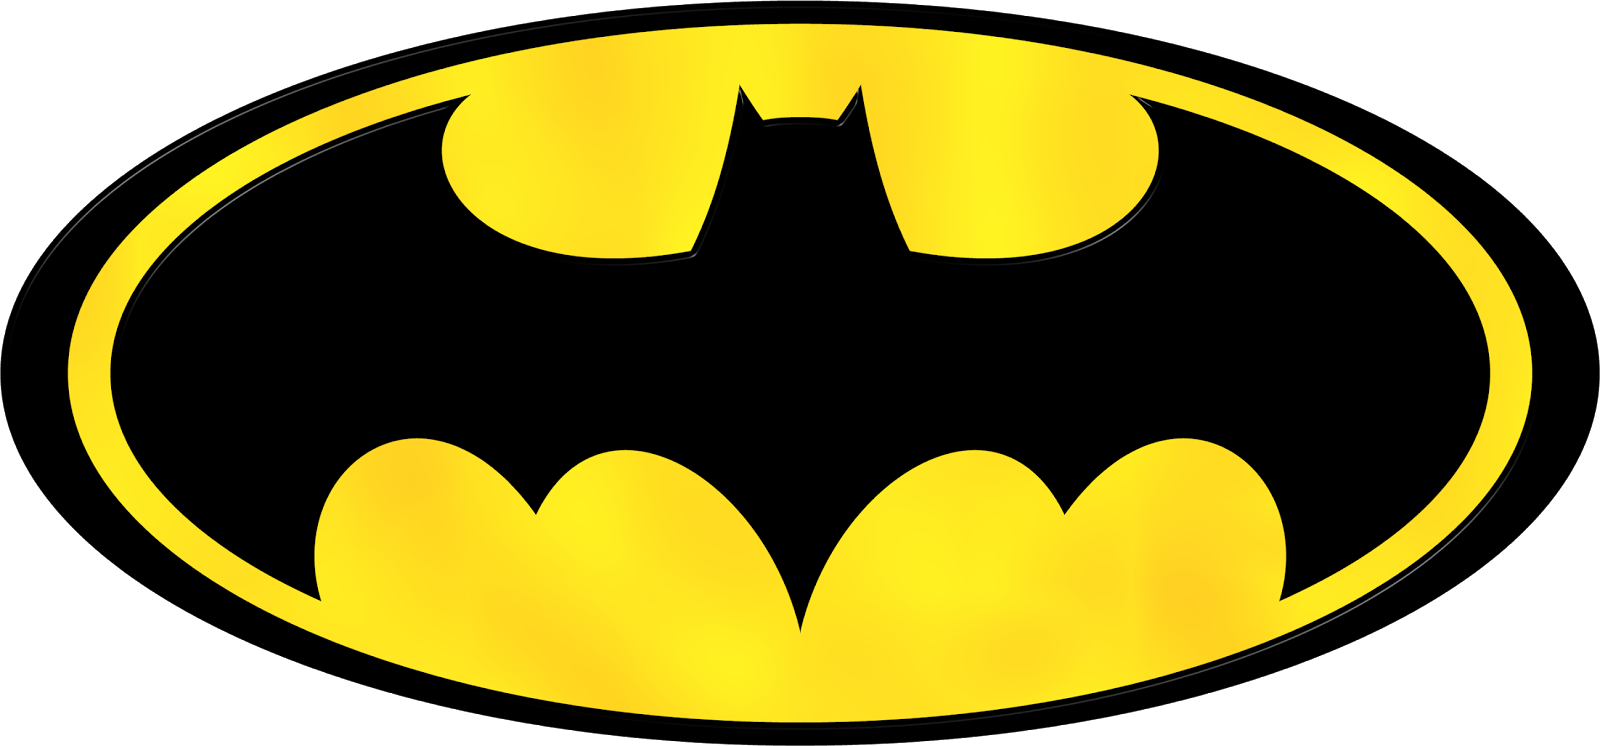 superhero symbols clipart batman